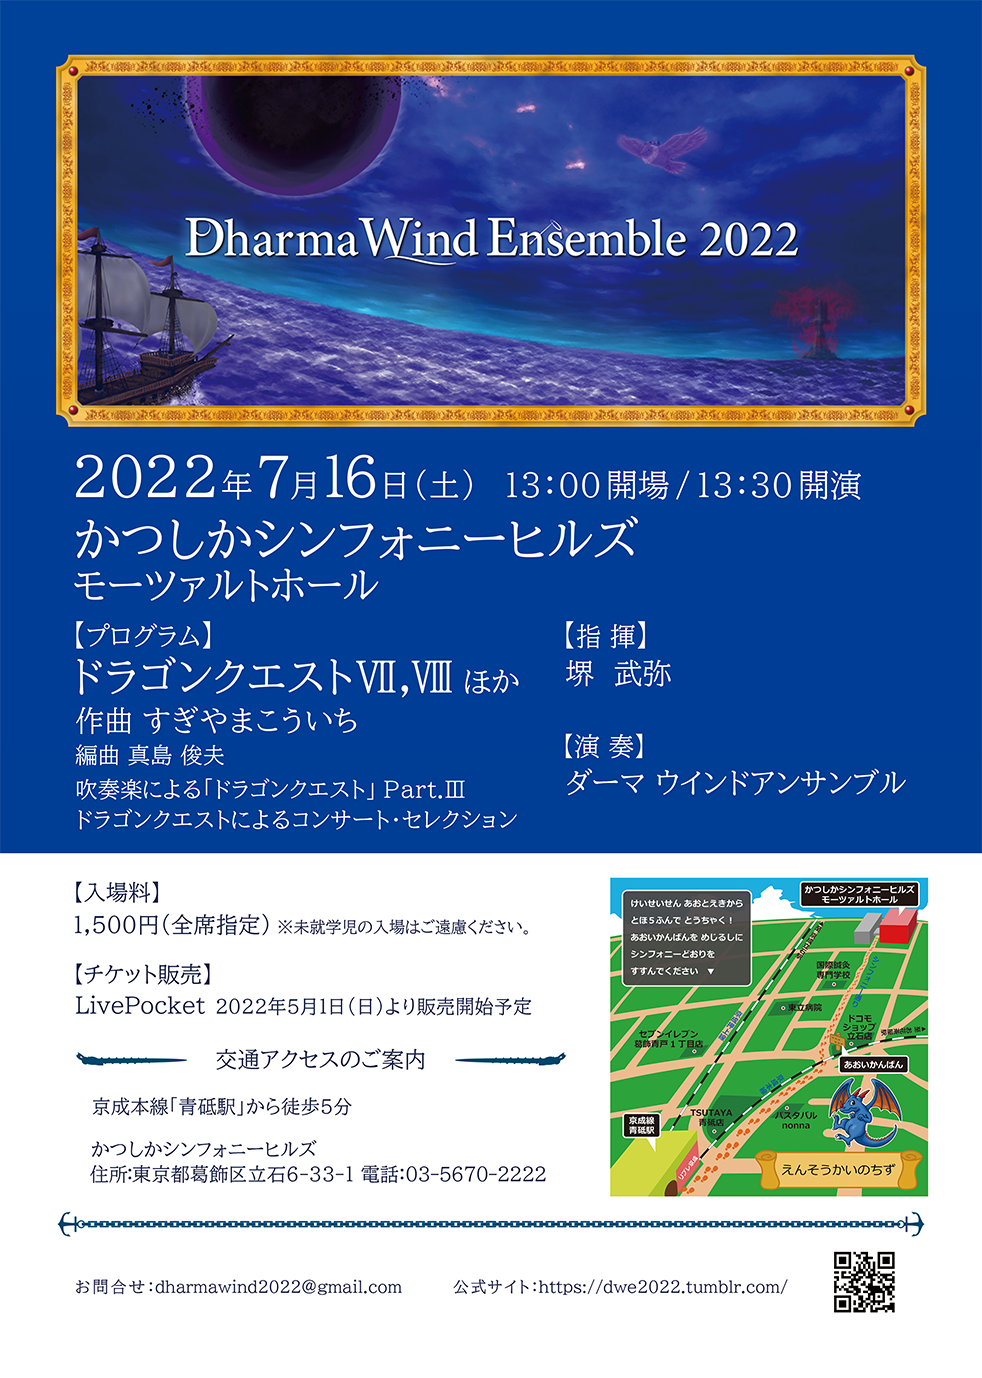 Dharma Wind EnsembleDharma Wind Ensemble 2022のフライヤー画像